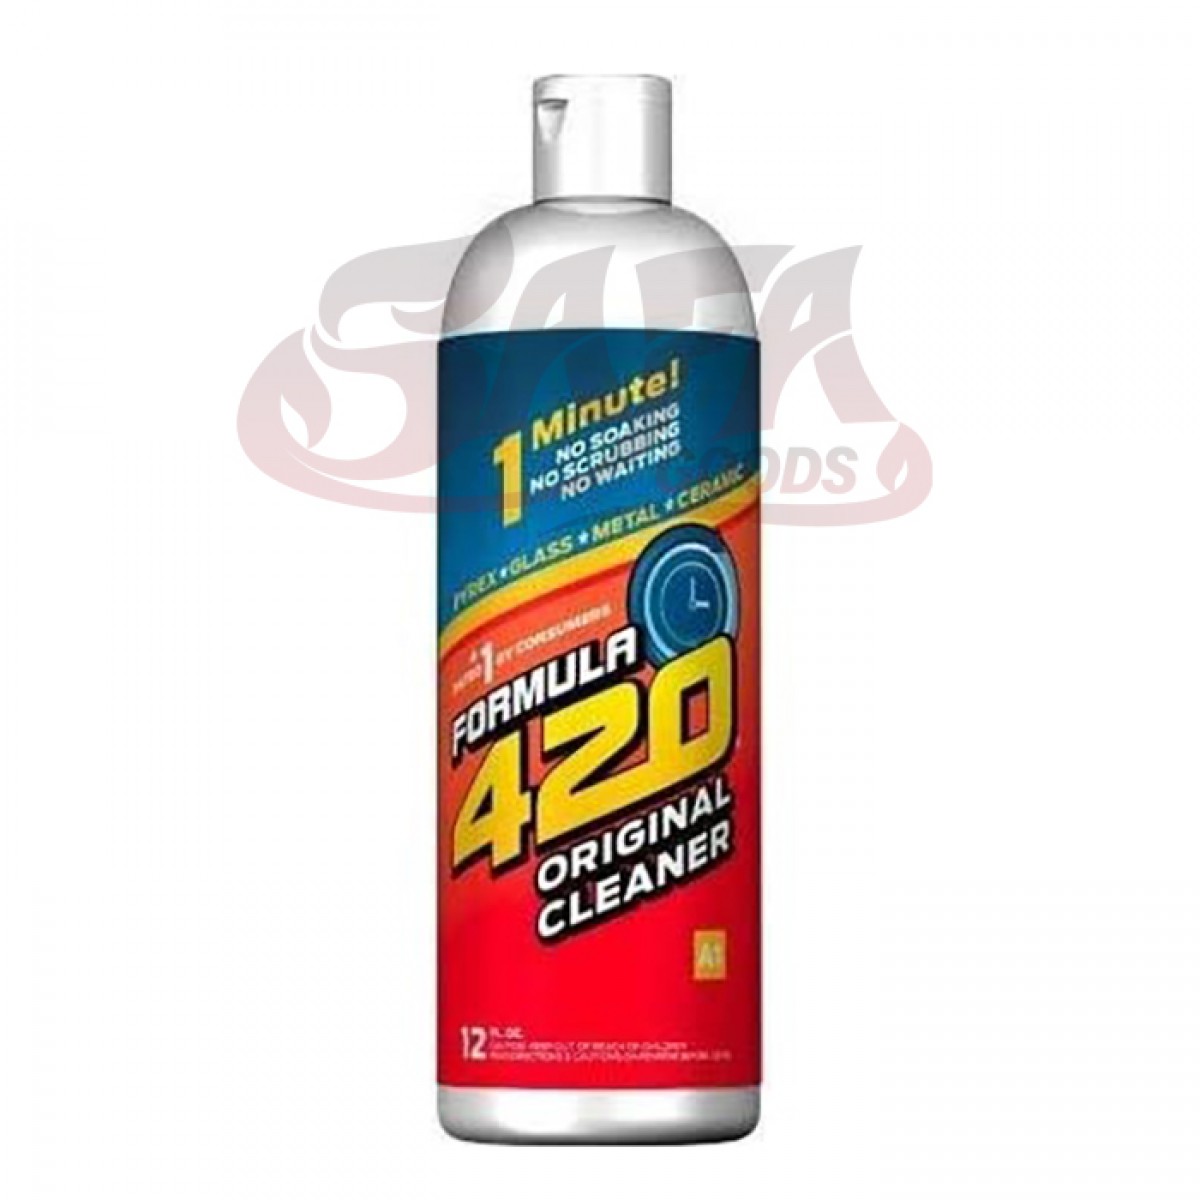 Formula 420 Original Formula Glass Pipe Cleaner 12oz